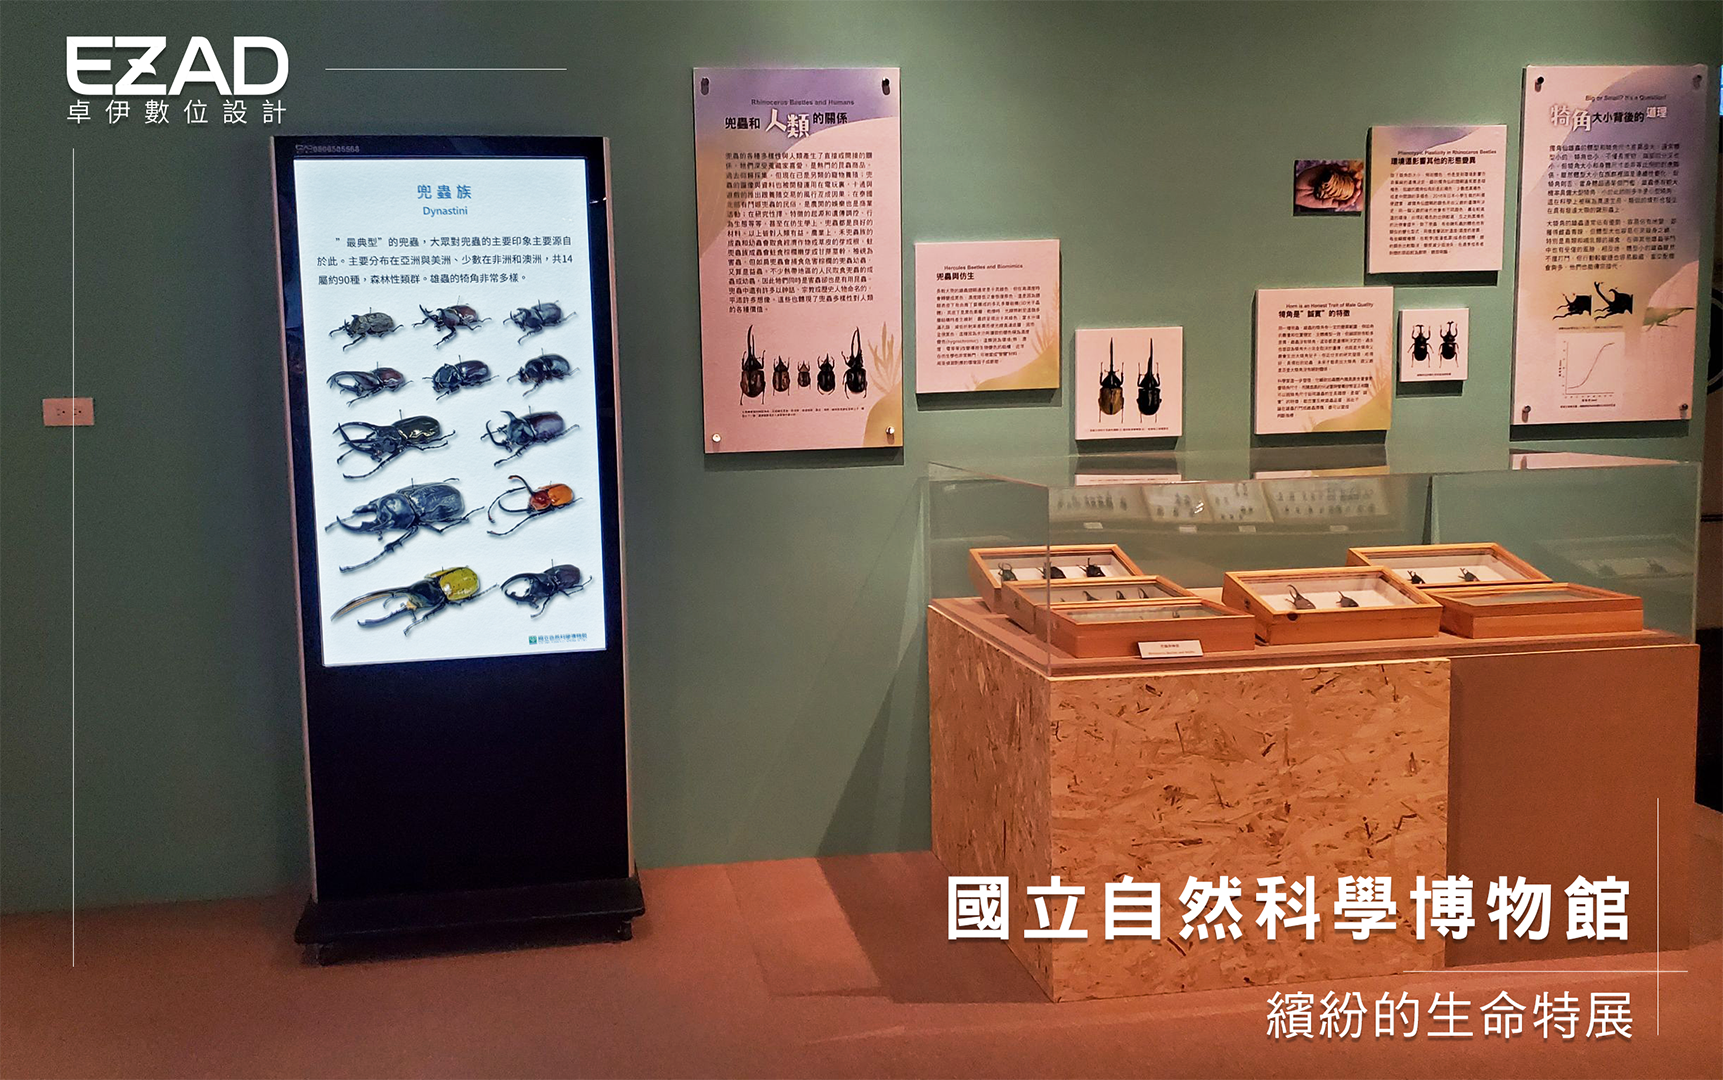 臺中國立自然科學博物館《繽紛的生命特展》